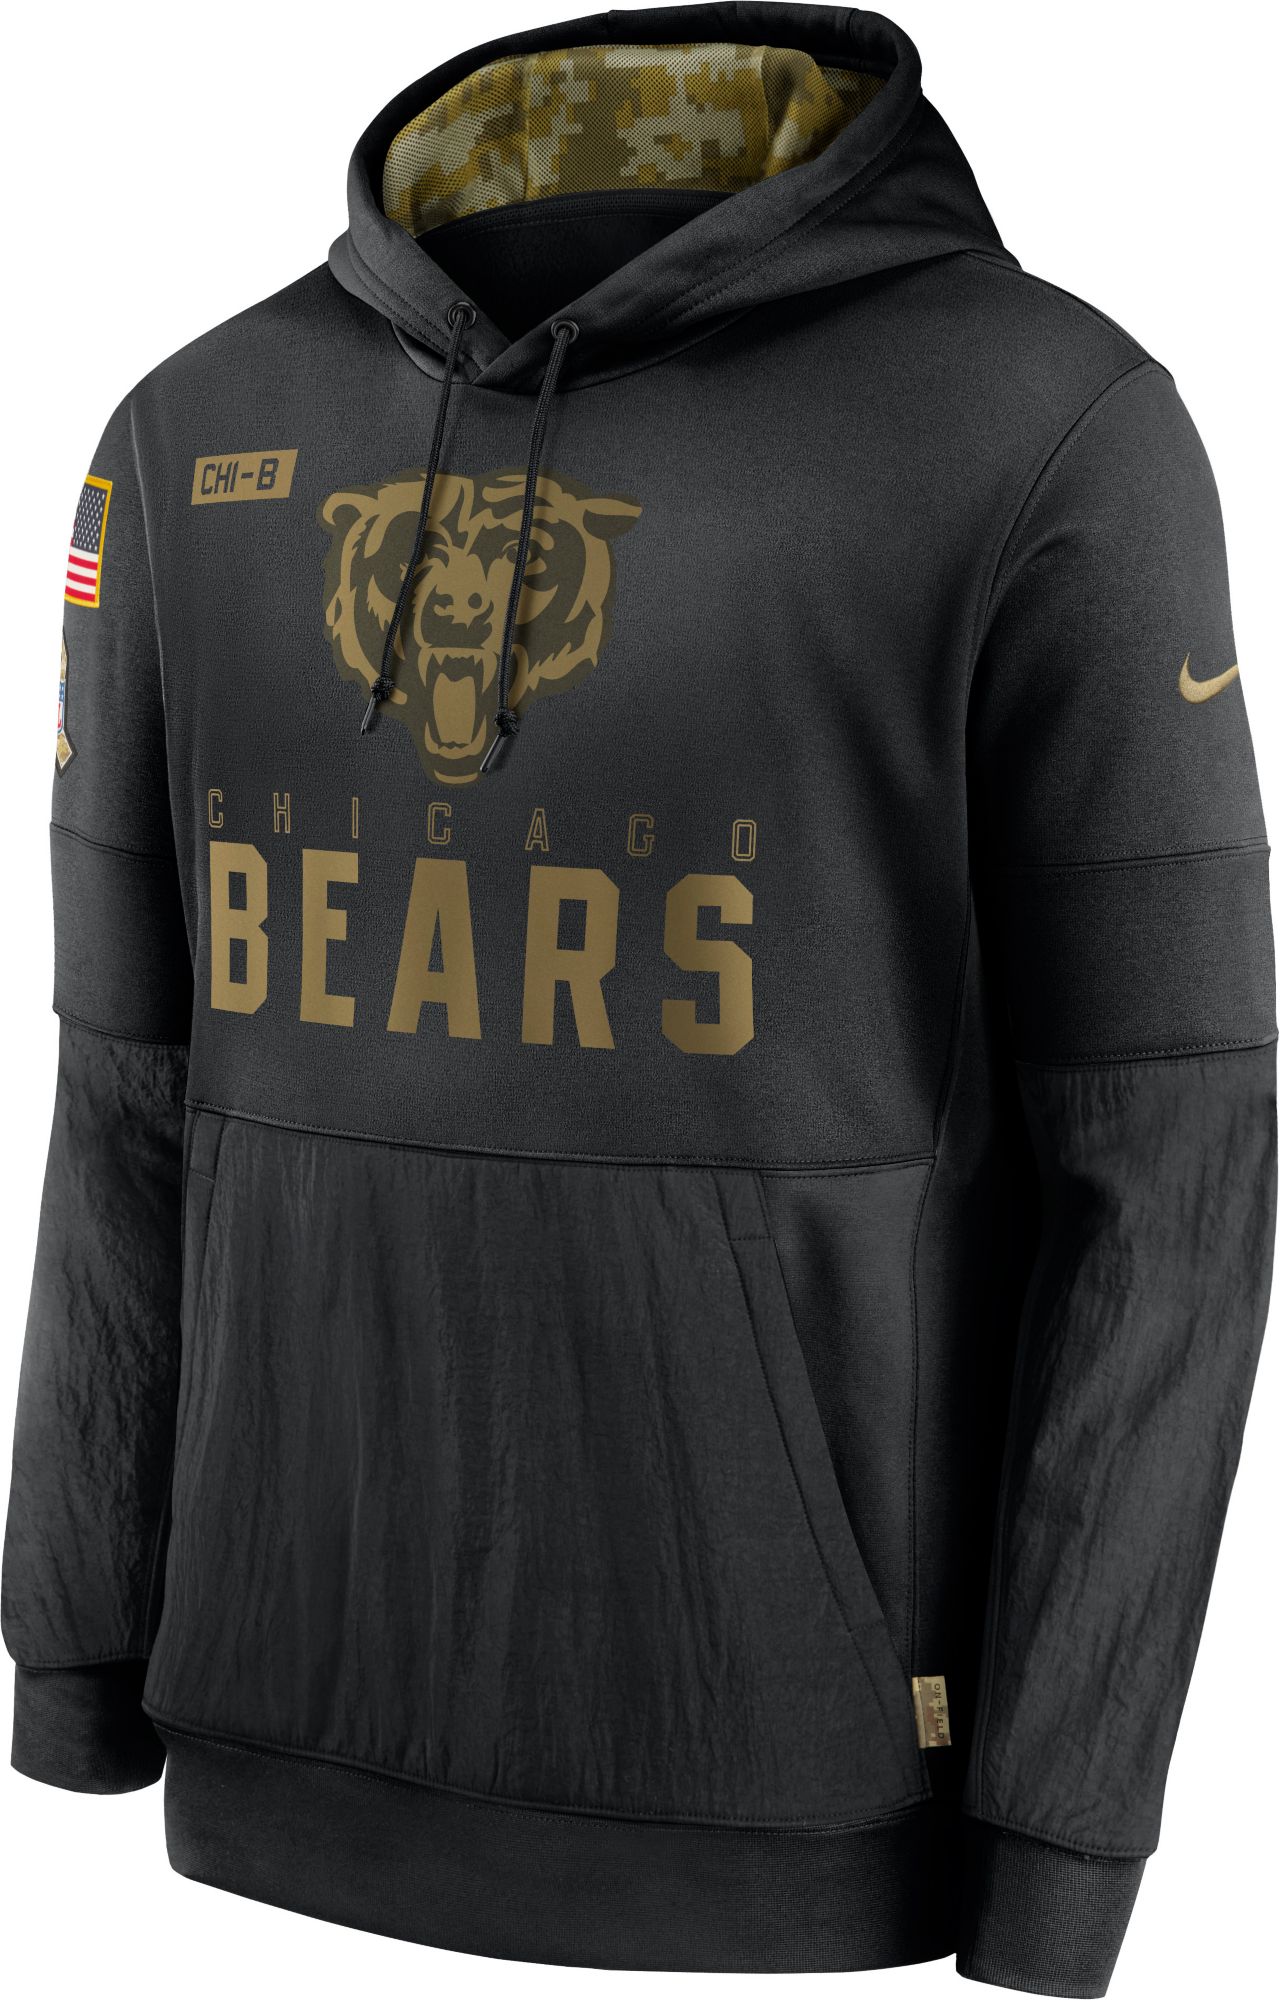 bears veterans day hoodie